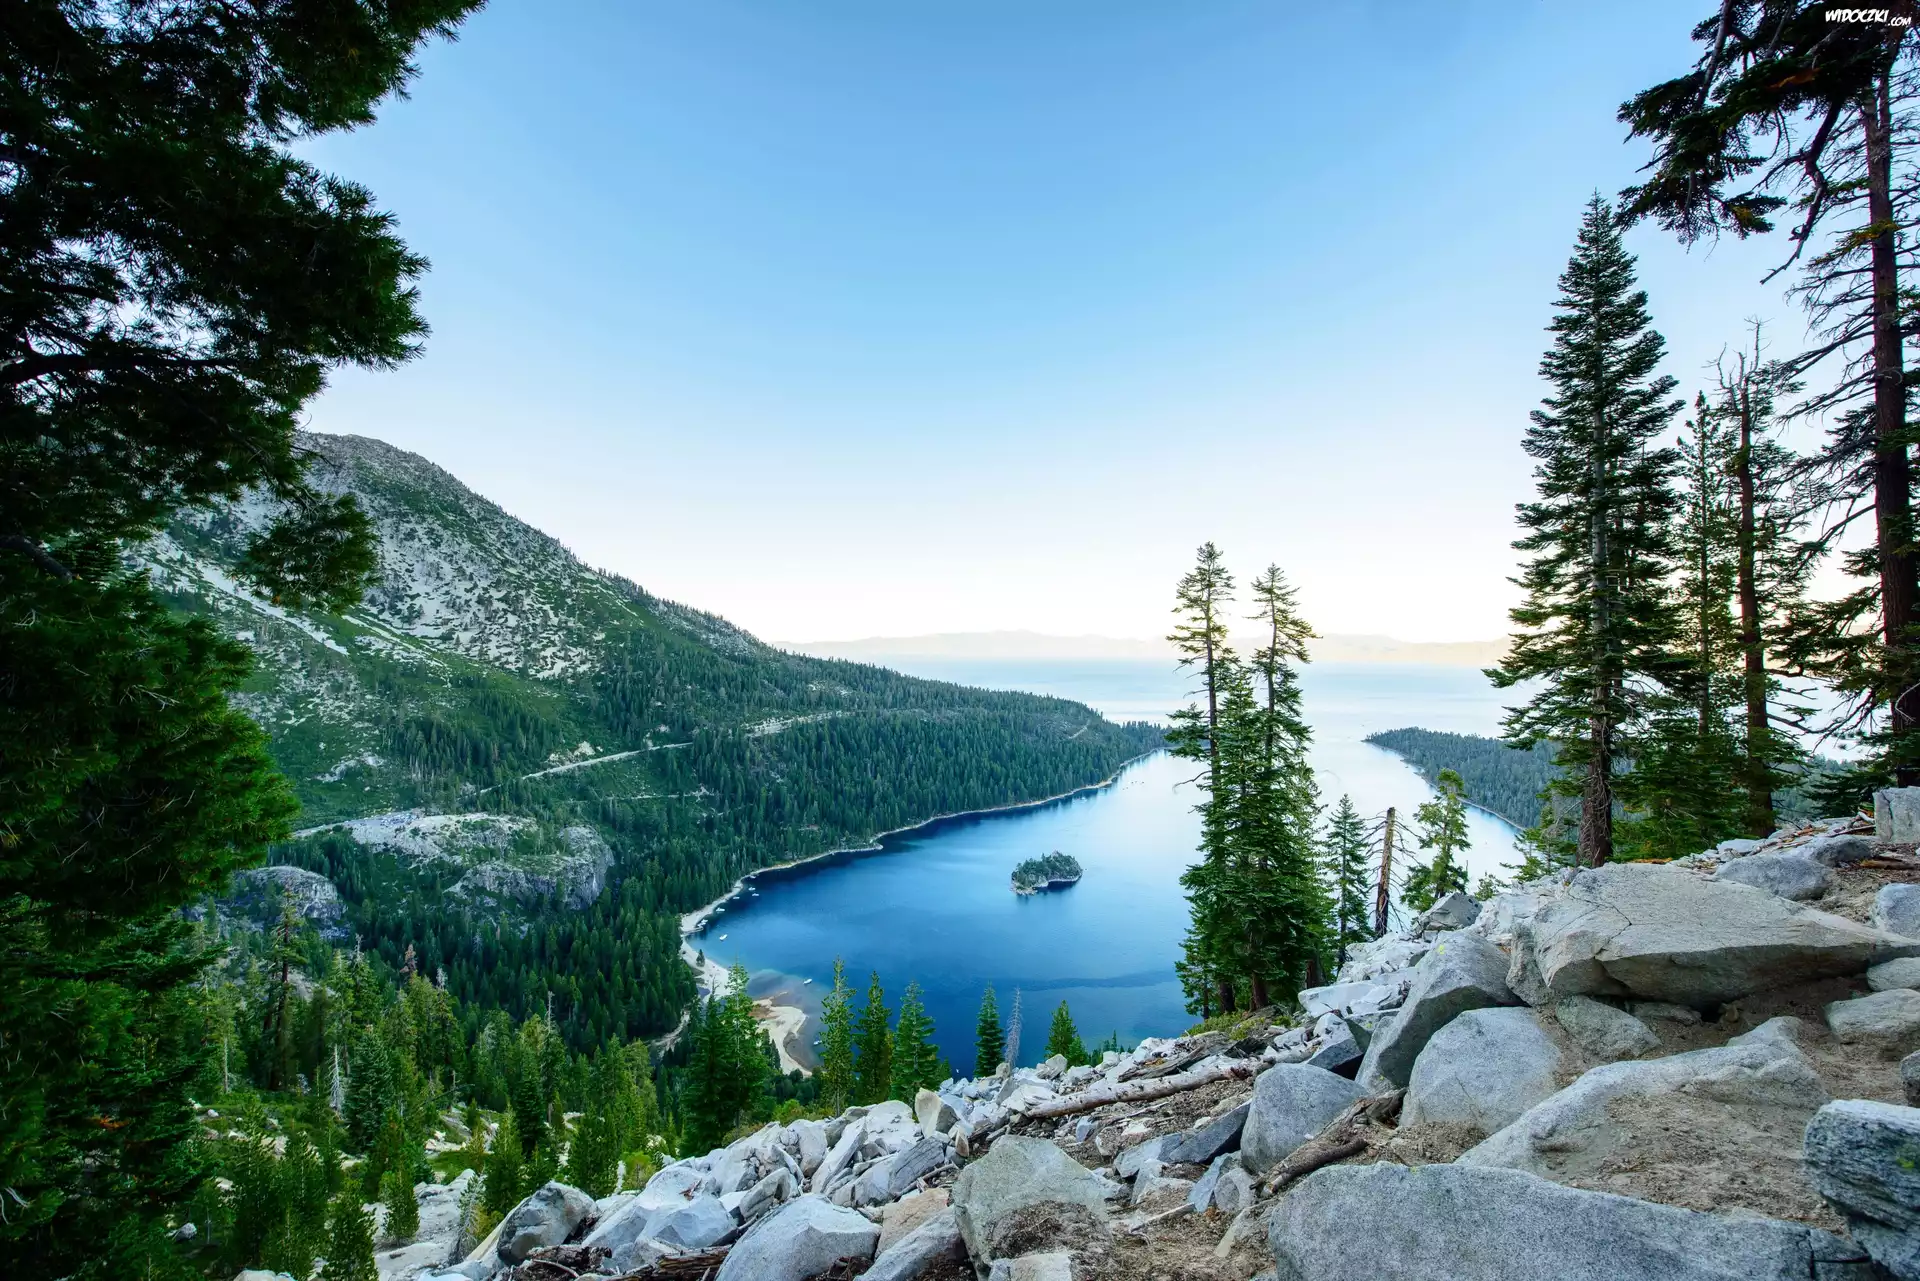 Stany Zjednoczone, Stan Kalifornia, Park stanowy Emerald Bay, Góry, Jezioro Tahoe, Las, Wyspa Fannette, Świerki